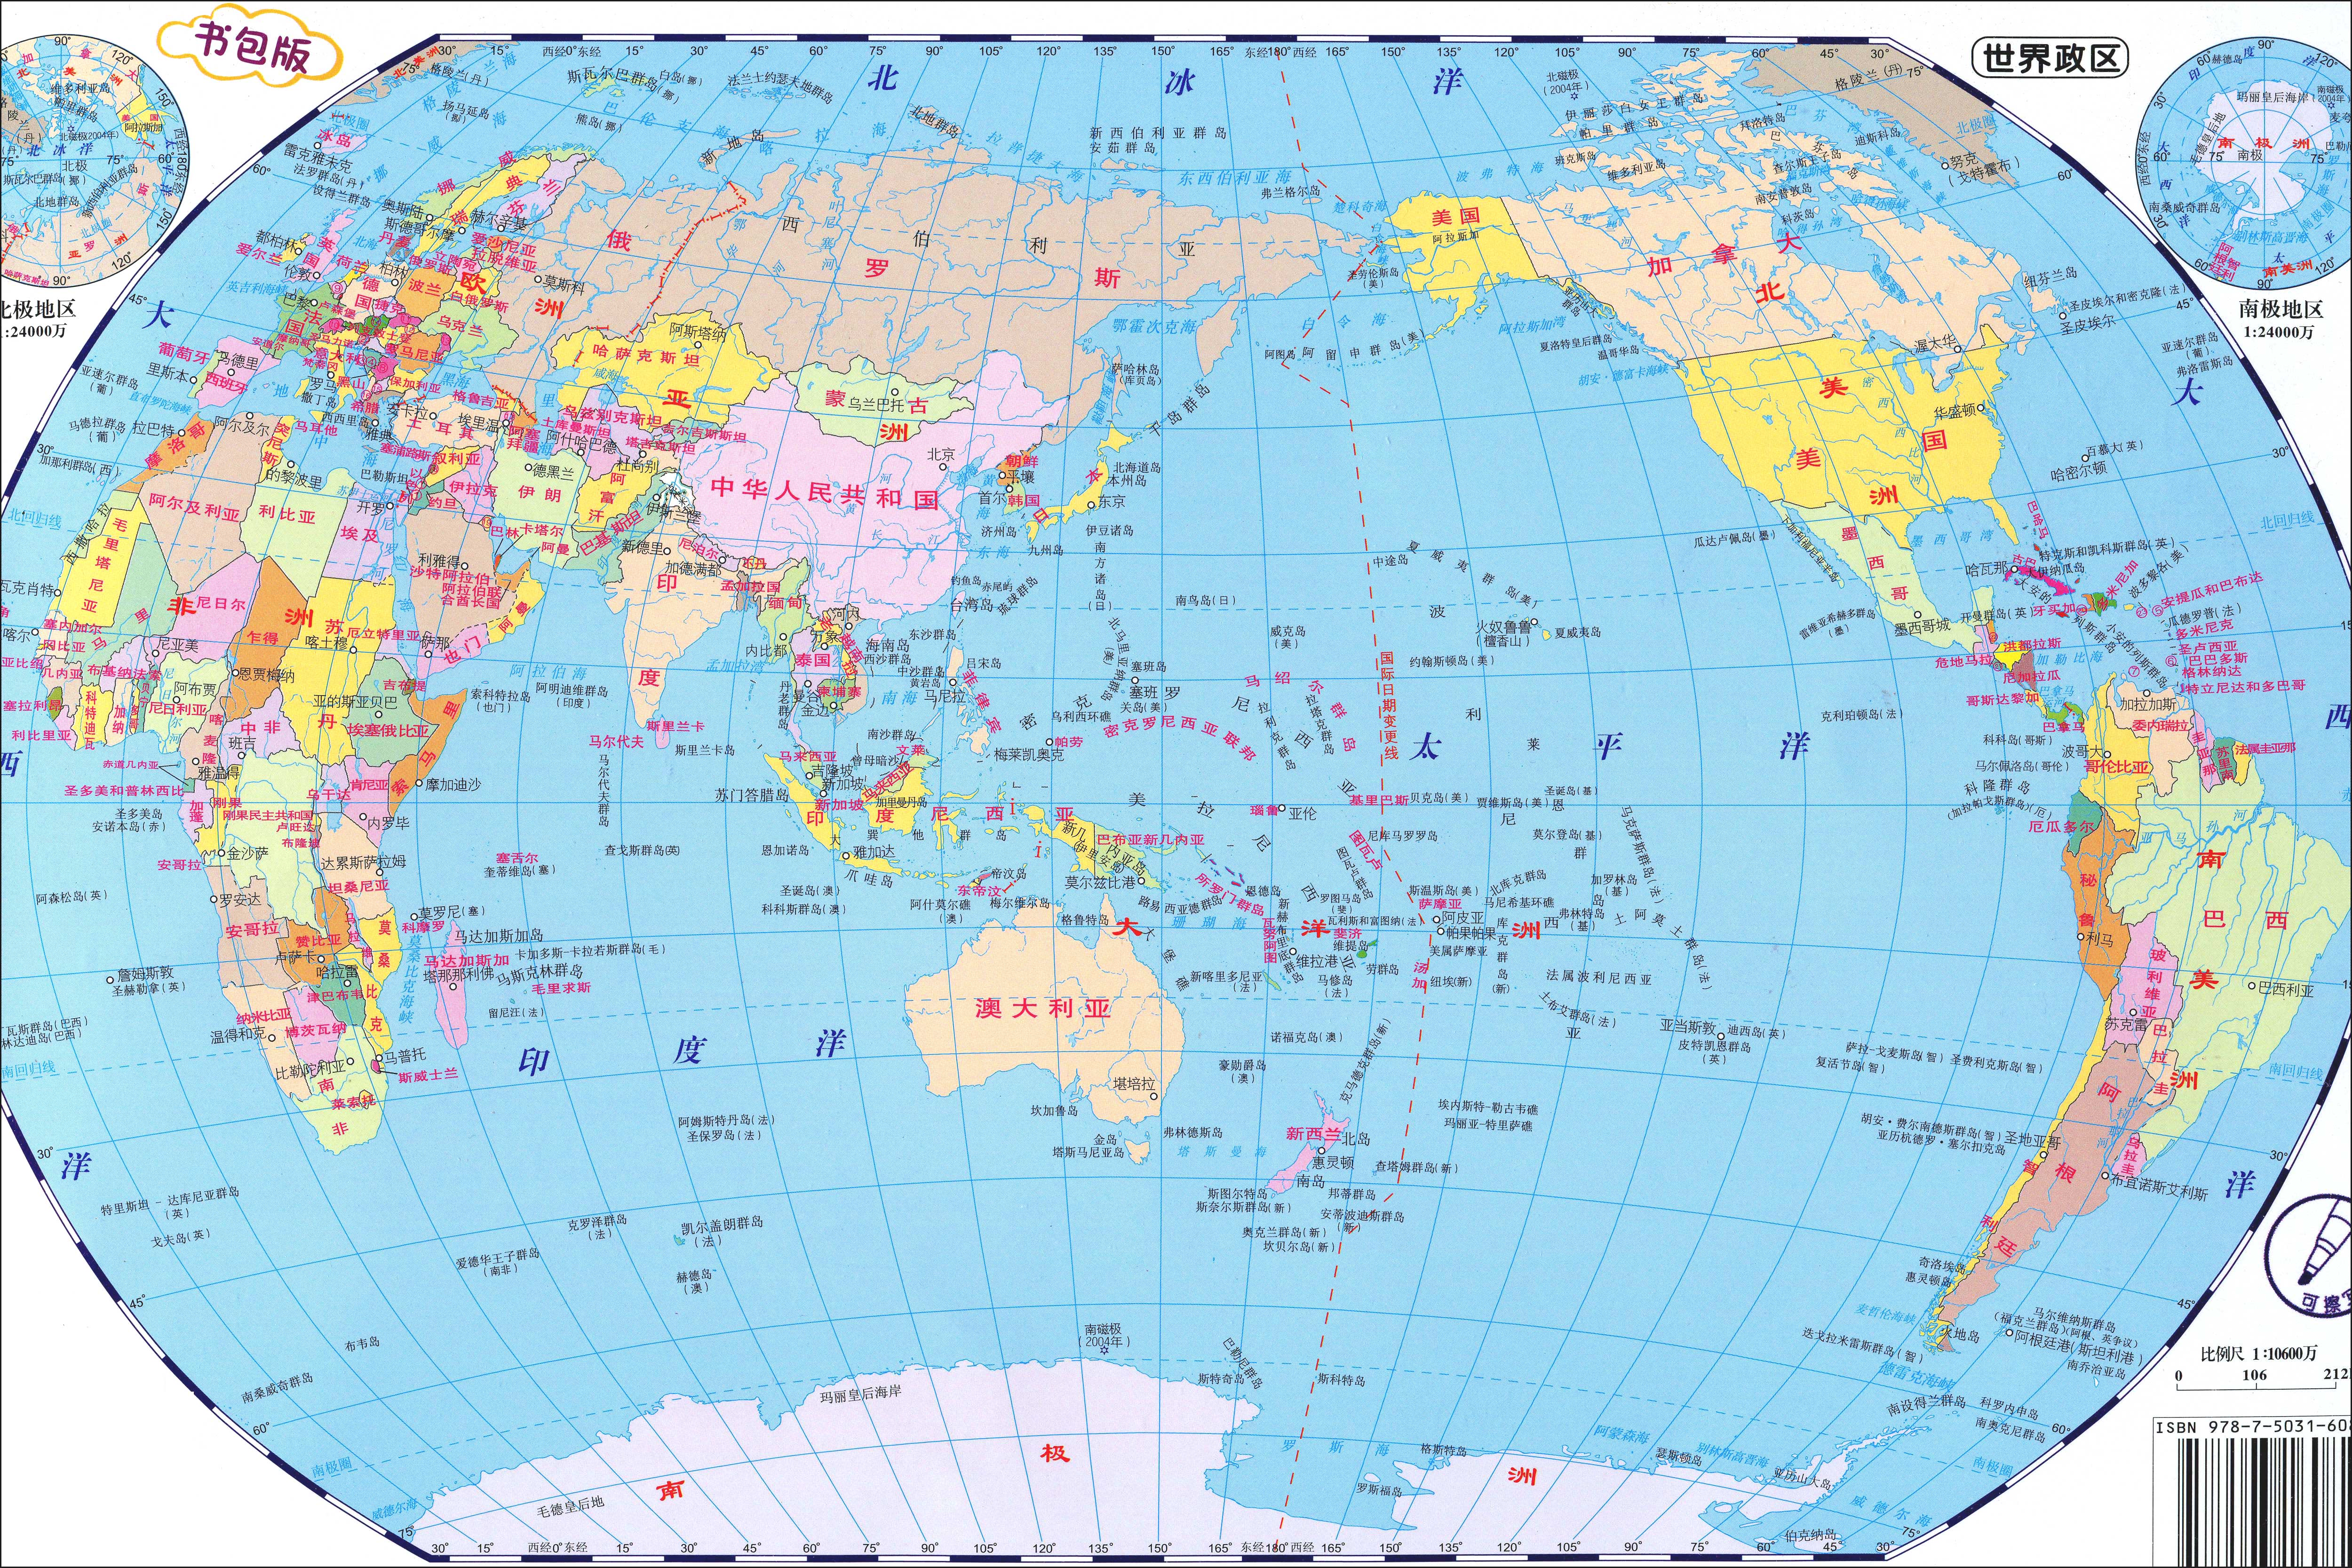 世界地图高清版大图_2015年1500万像素高清全图